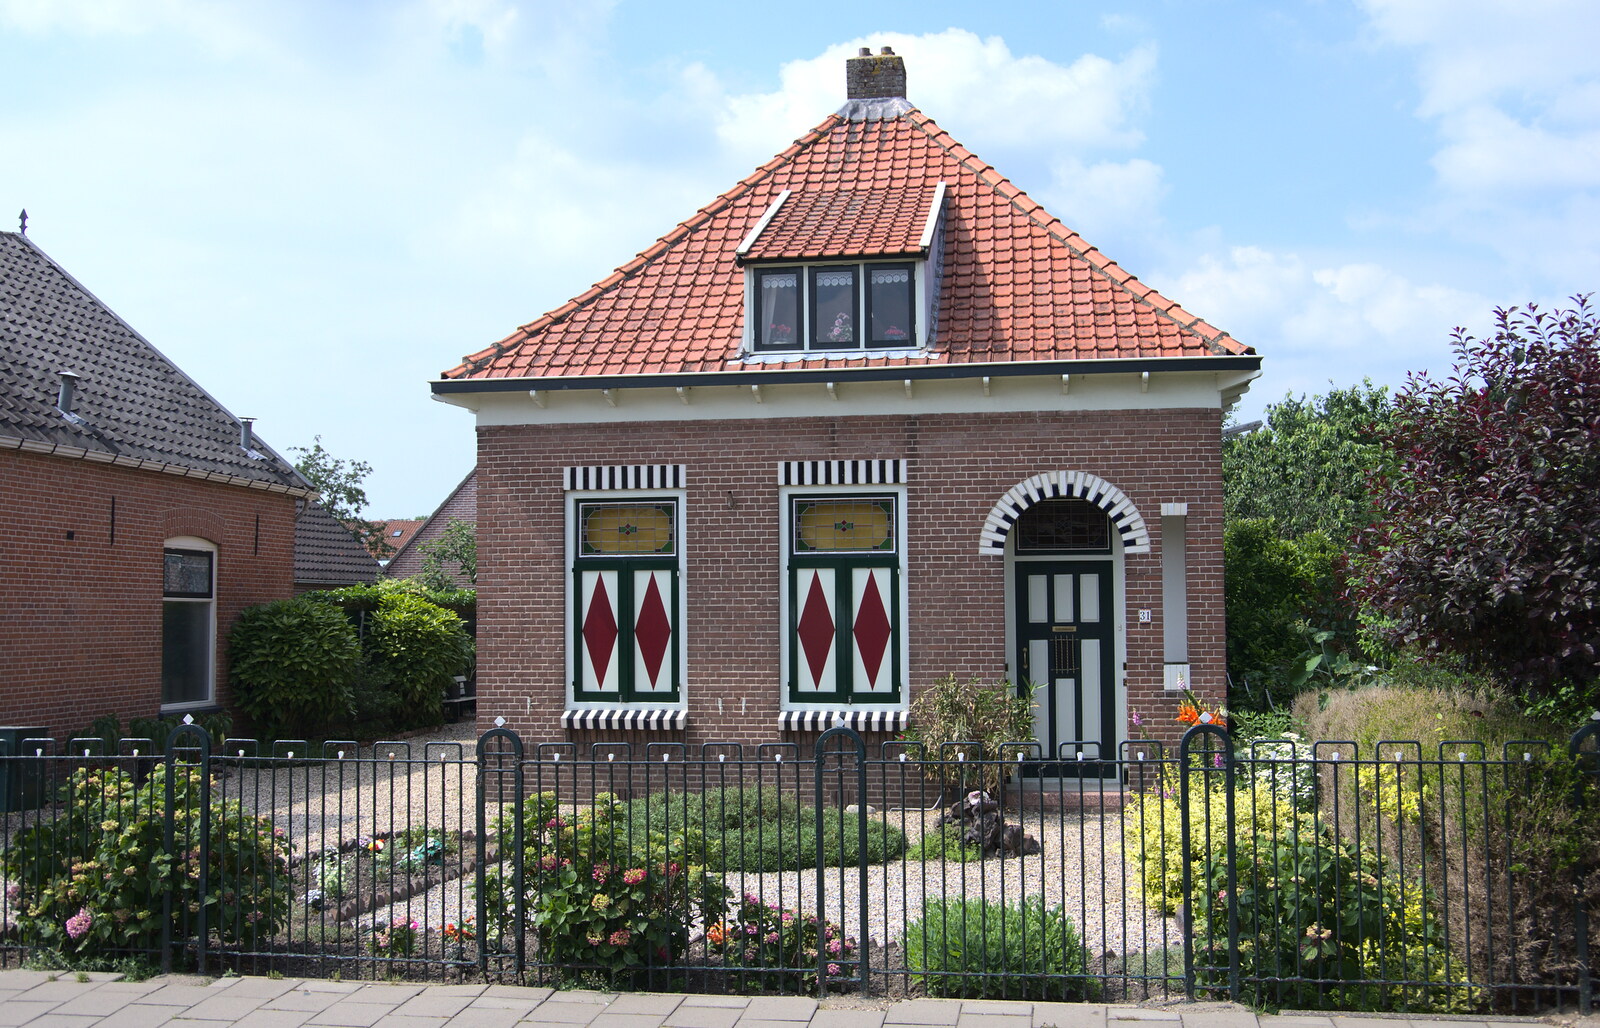 A nice quintessential Dutch house from A Postcard From Asperen, Gelderland, Netherlands - 9th June 2018